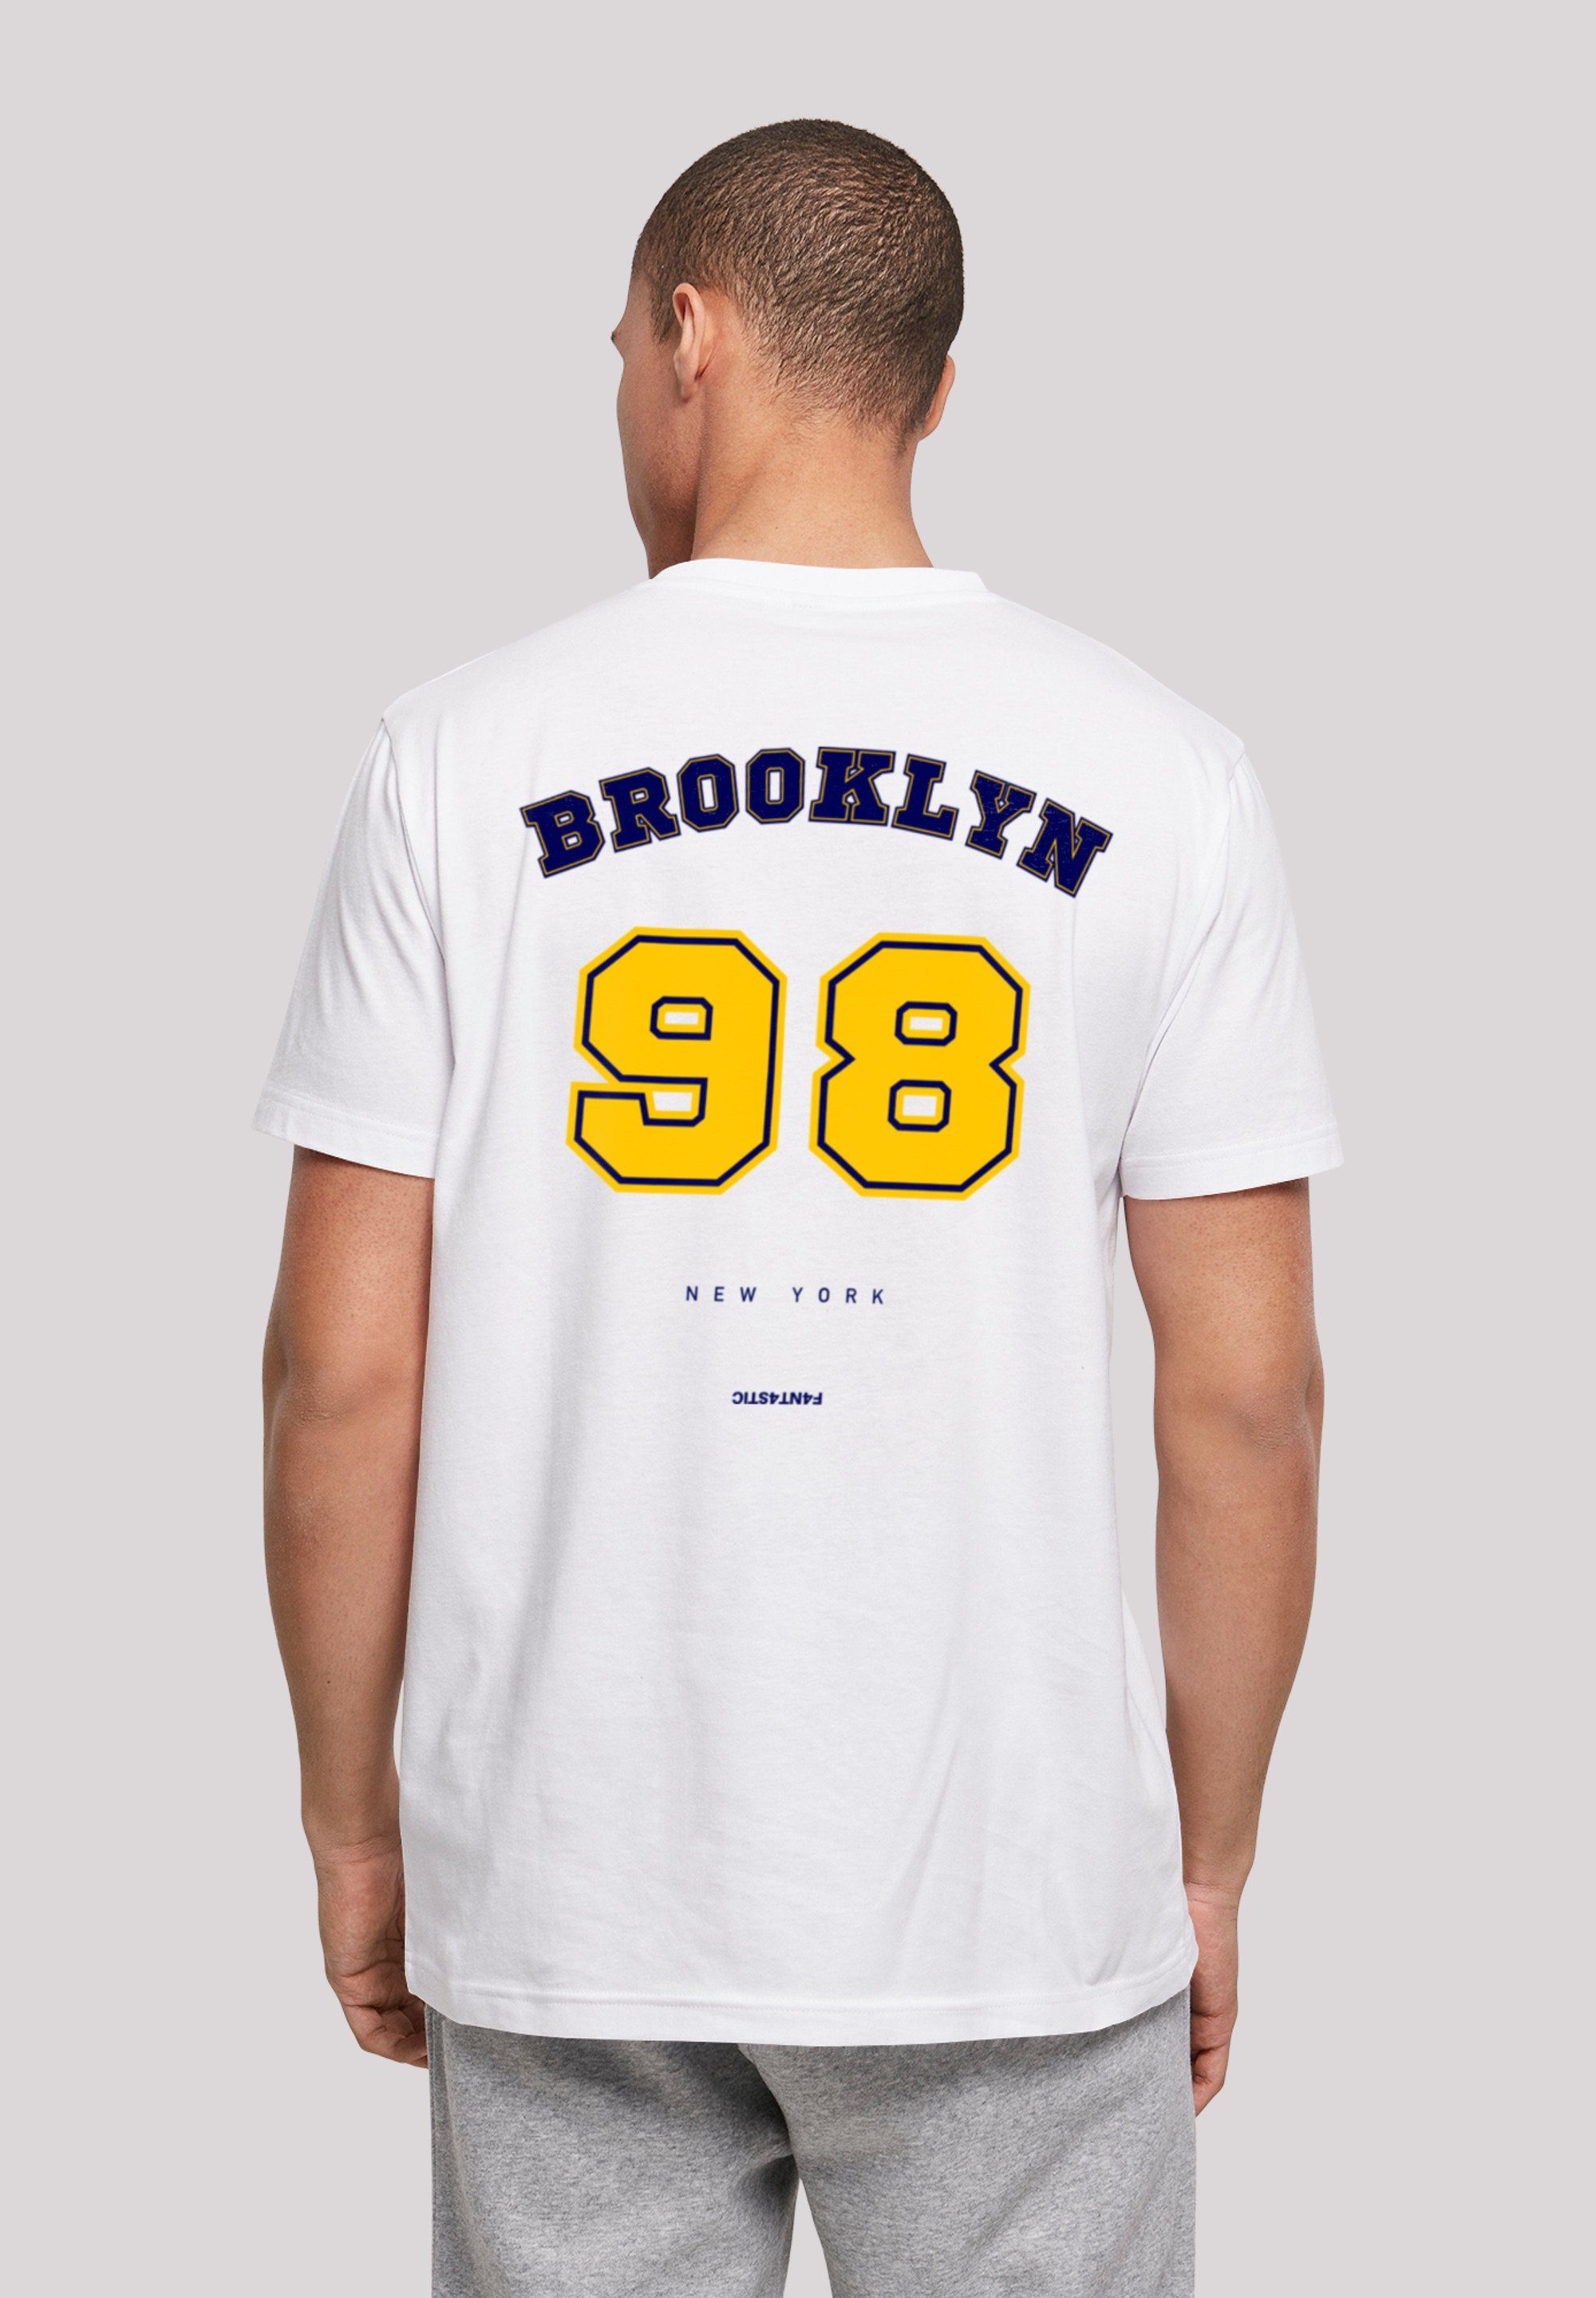 F4NT4STIC T-Shirt TEE weiß UNISEX NY Print 98 Brooklyn